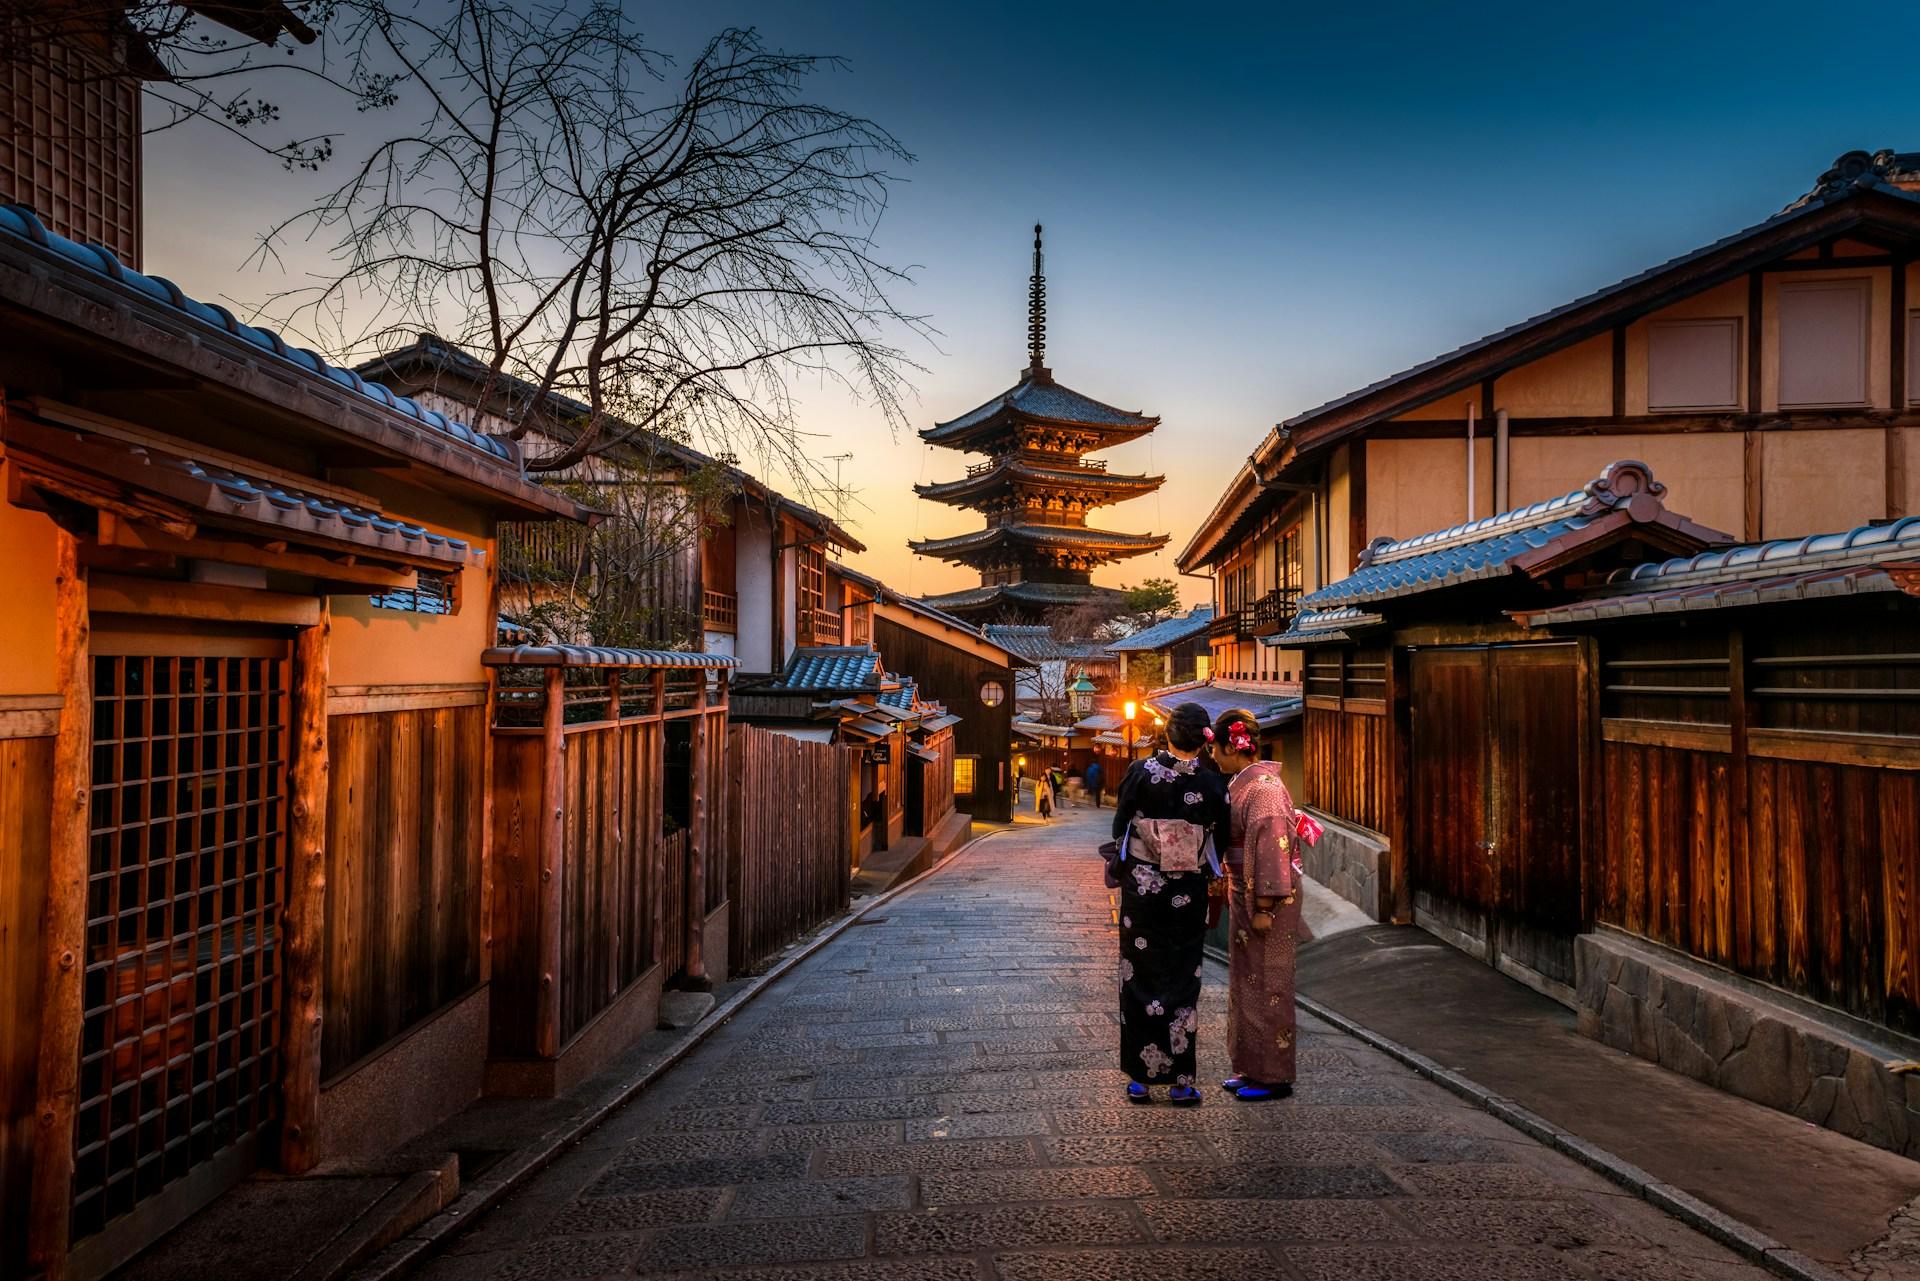 Cinq joyaux cachés à découvrir à Kyoto background